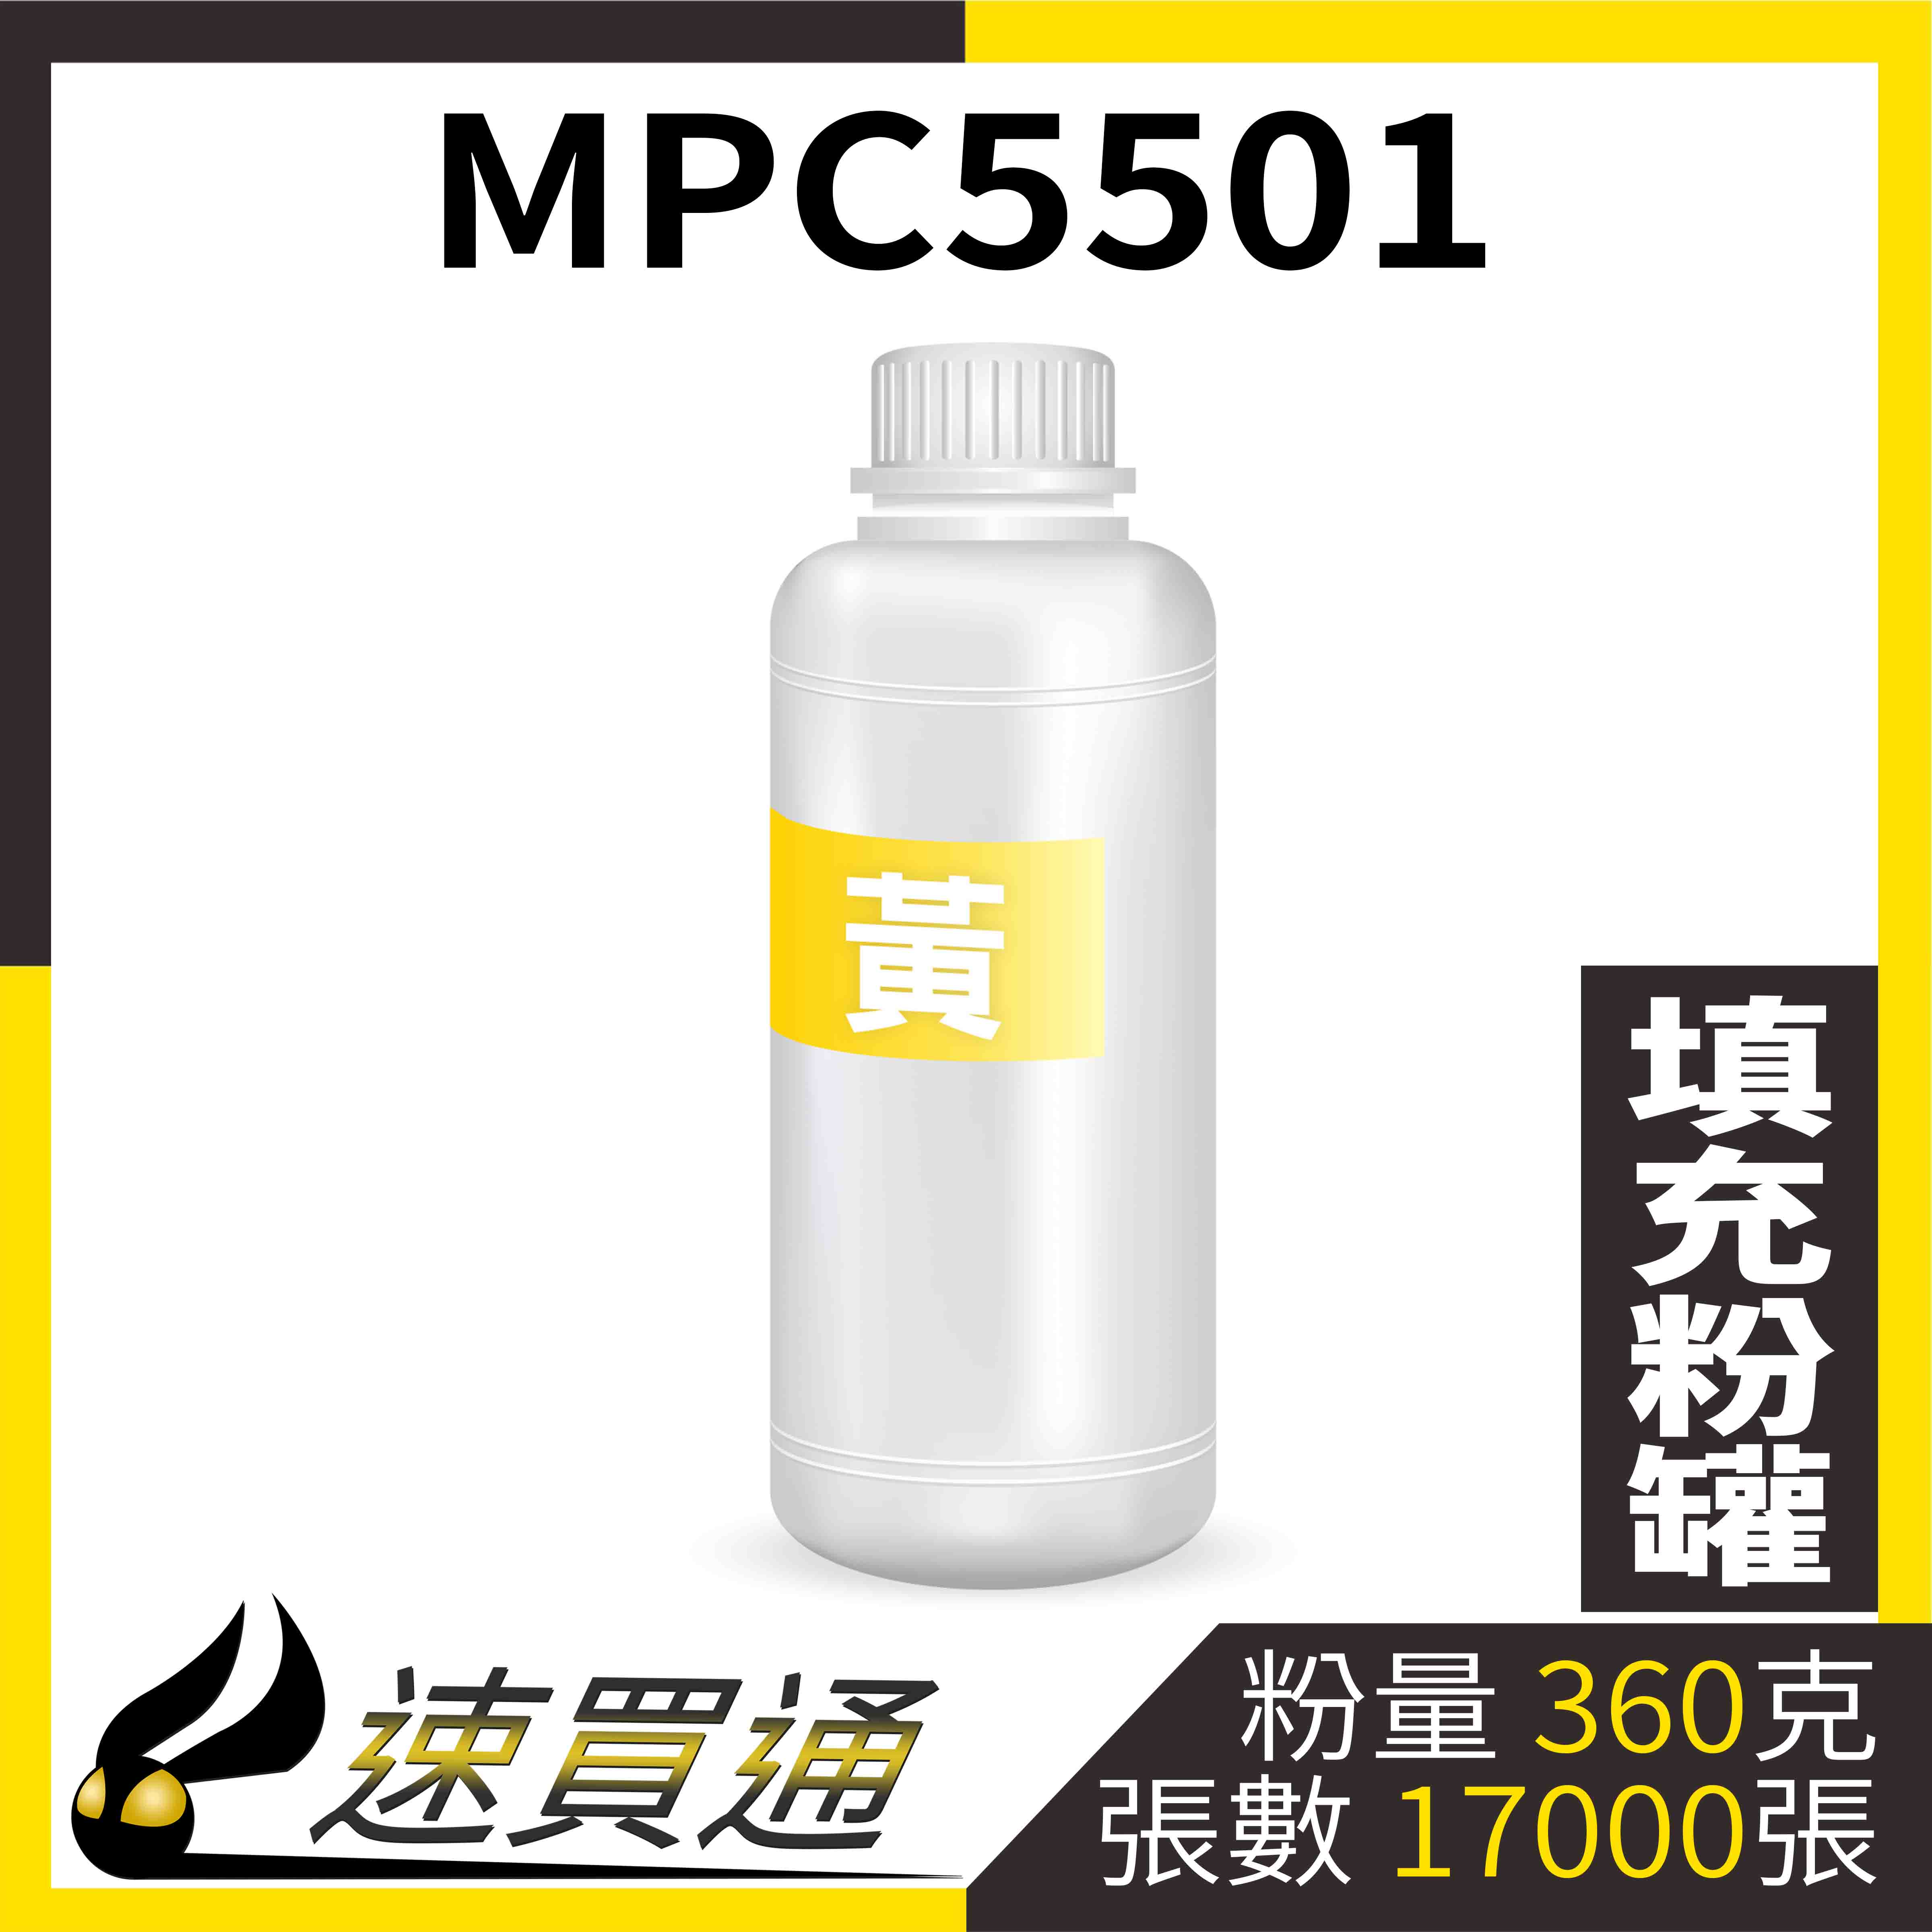 【速買通】RICOH MPC5501 黃 填充式碳粉罐